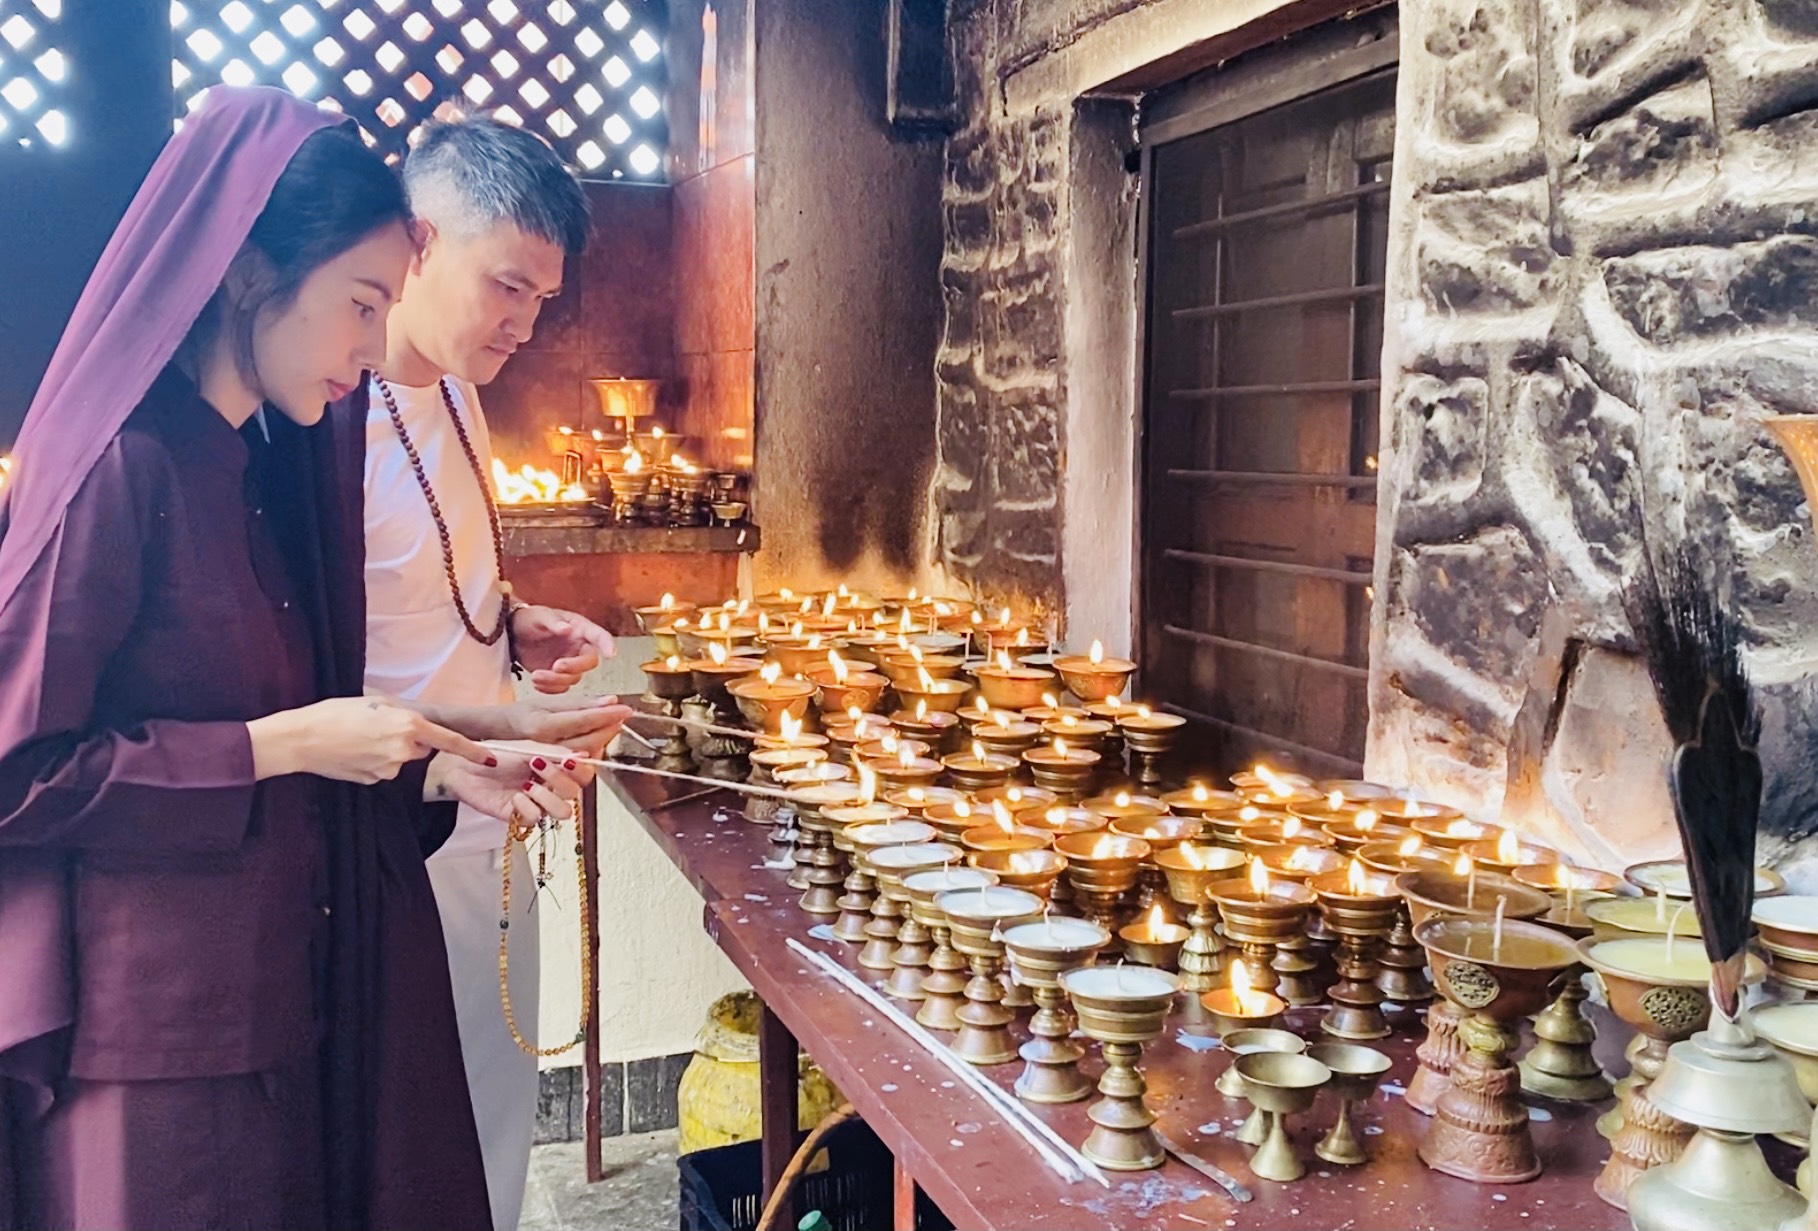 Thủy Tiên và Công Vinh tham gia một số nghi lễ cầu bình an ở Nepal. Ảnh: Nhân vật cung cấp